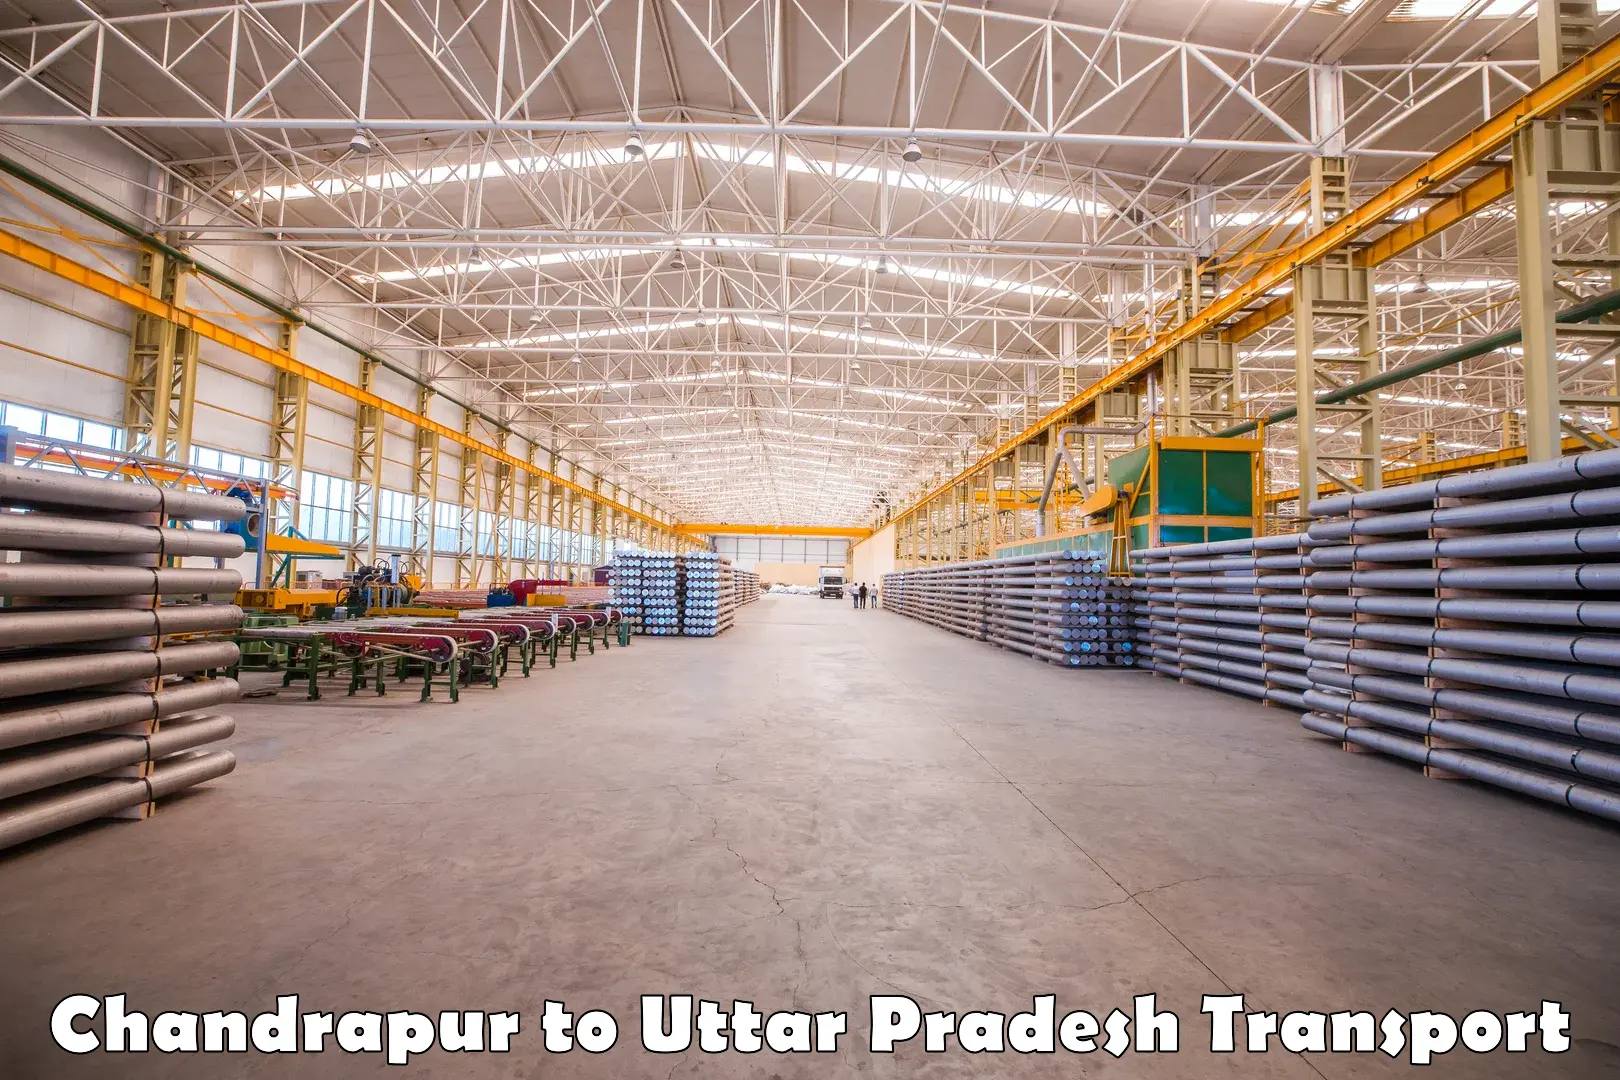 Parcel transport services Chandrapur to Uttar Pradesh